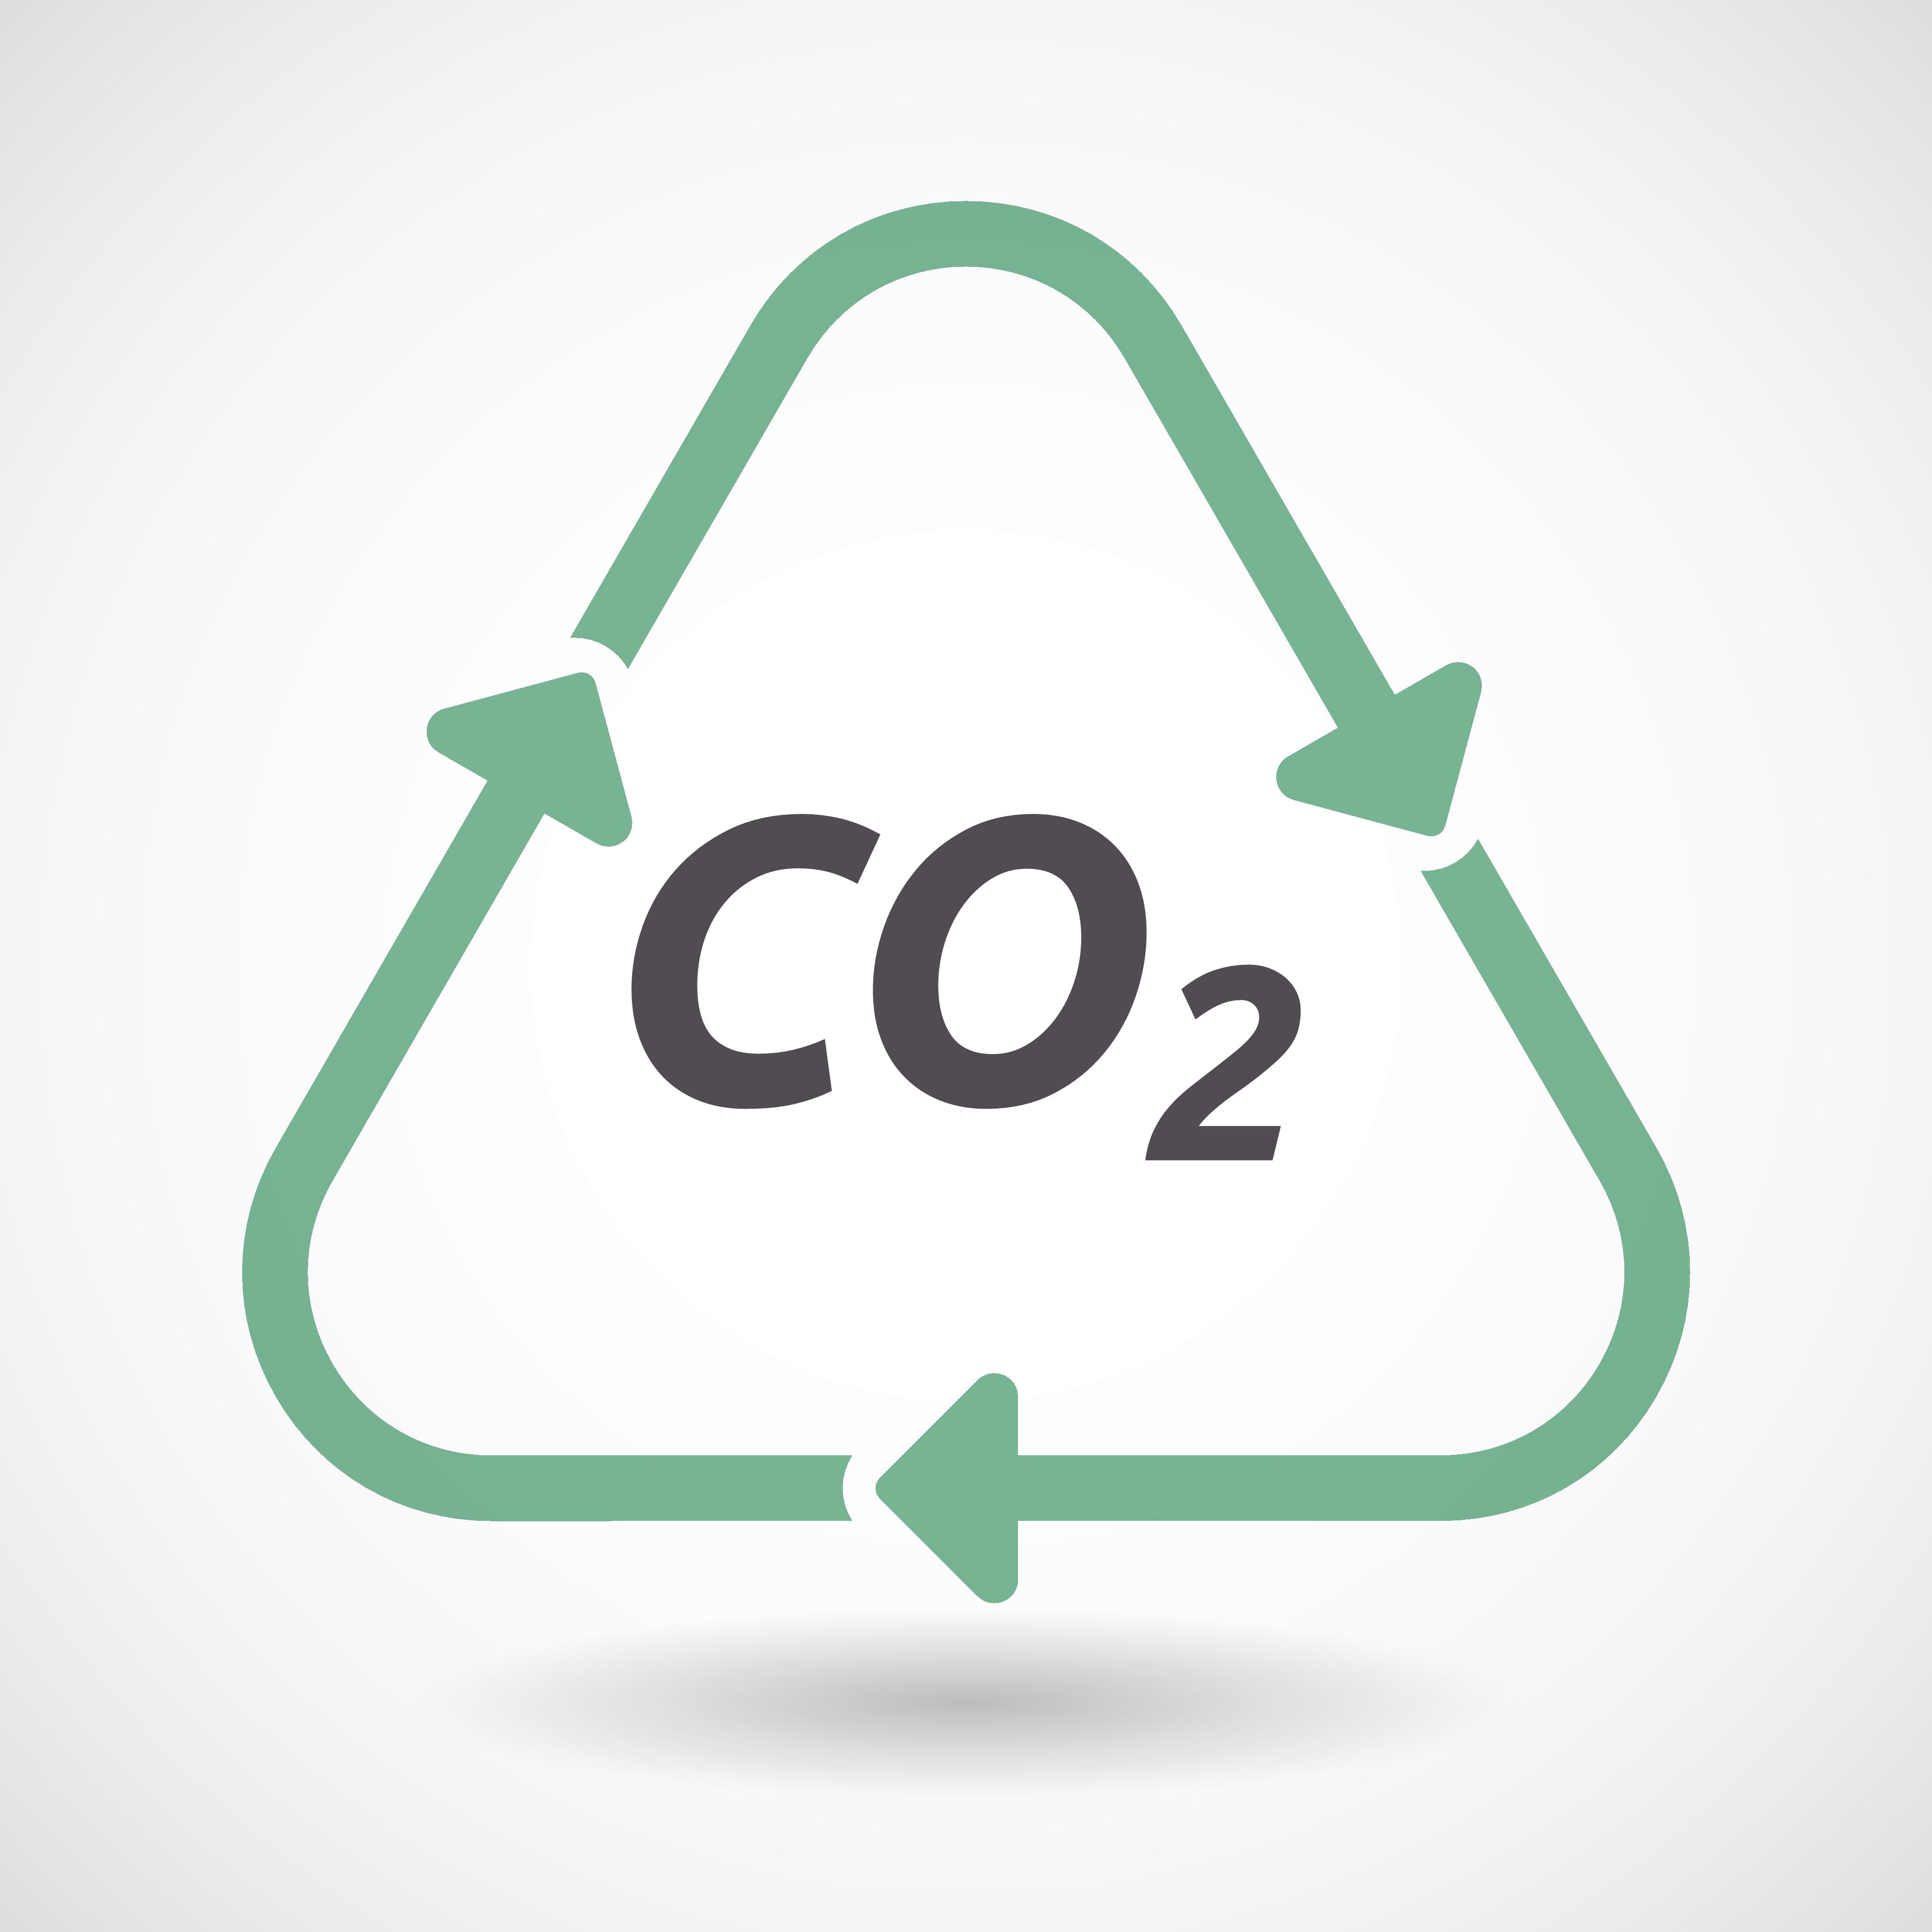 Grafik viser ordet CO2 omgivet af pile